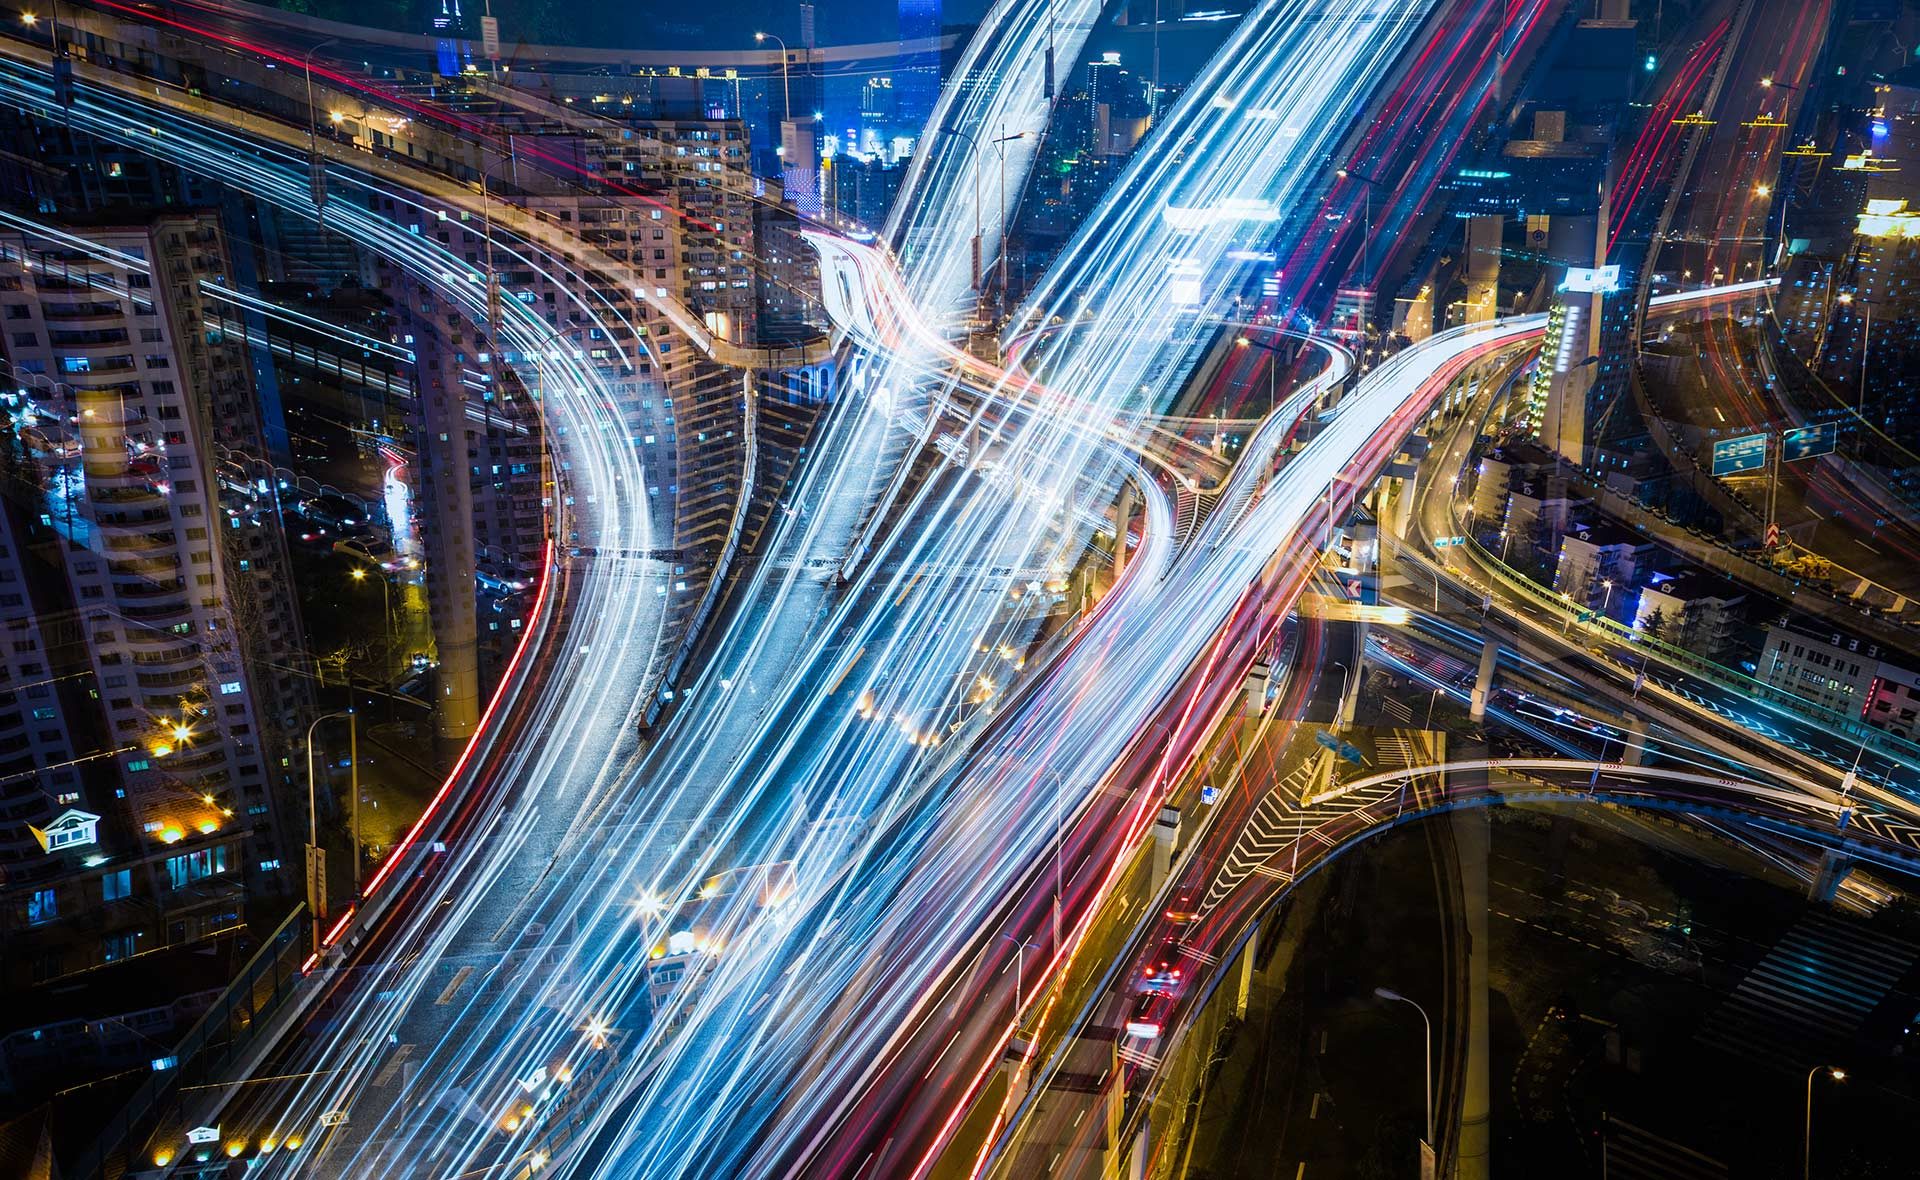 Fotografía de Calle, conexiones, cruces, coches, tecnología, luces, movimiento, velocidad